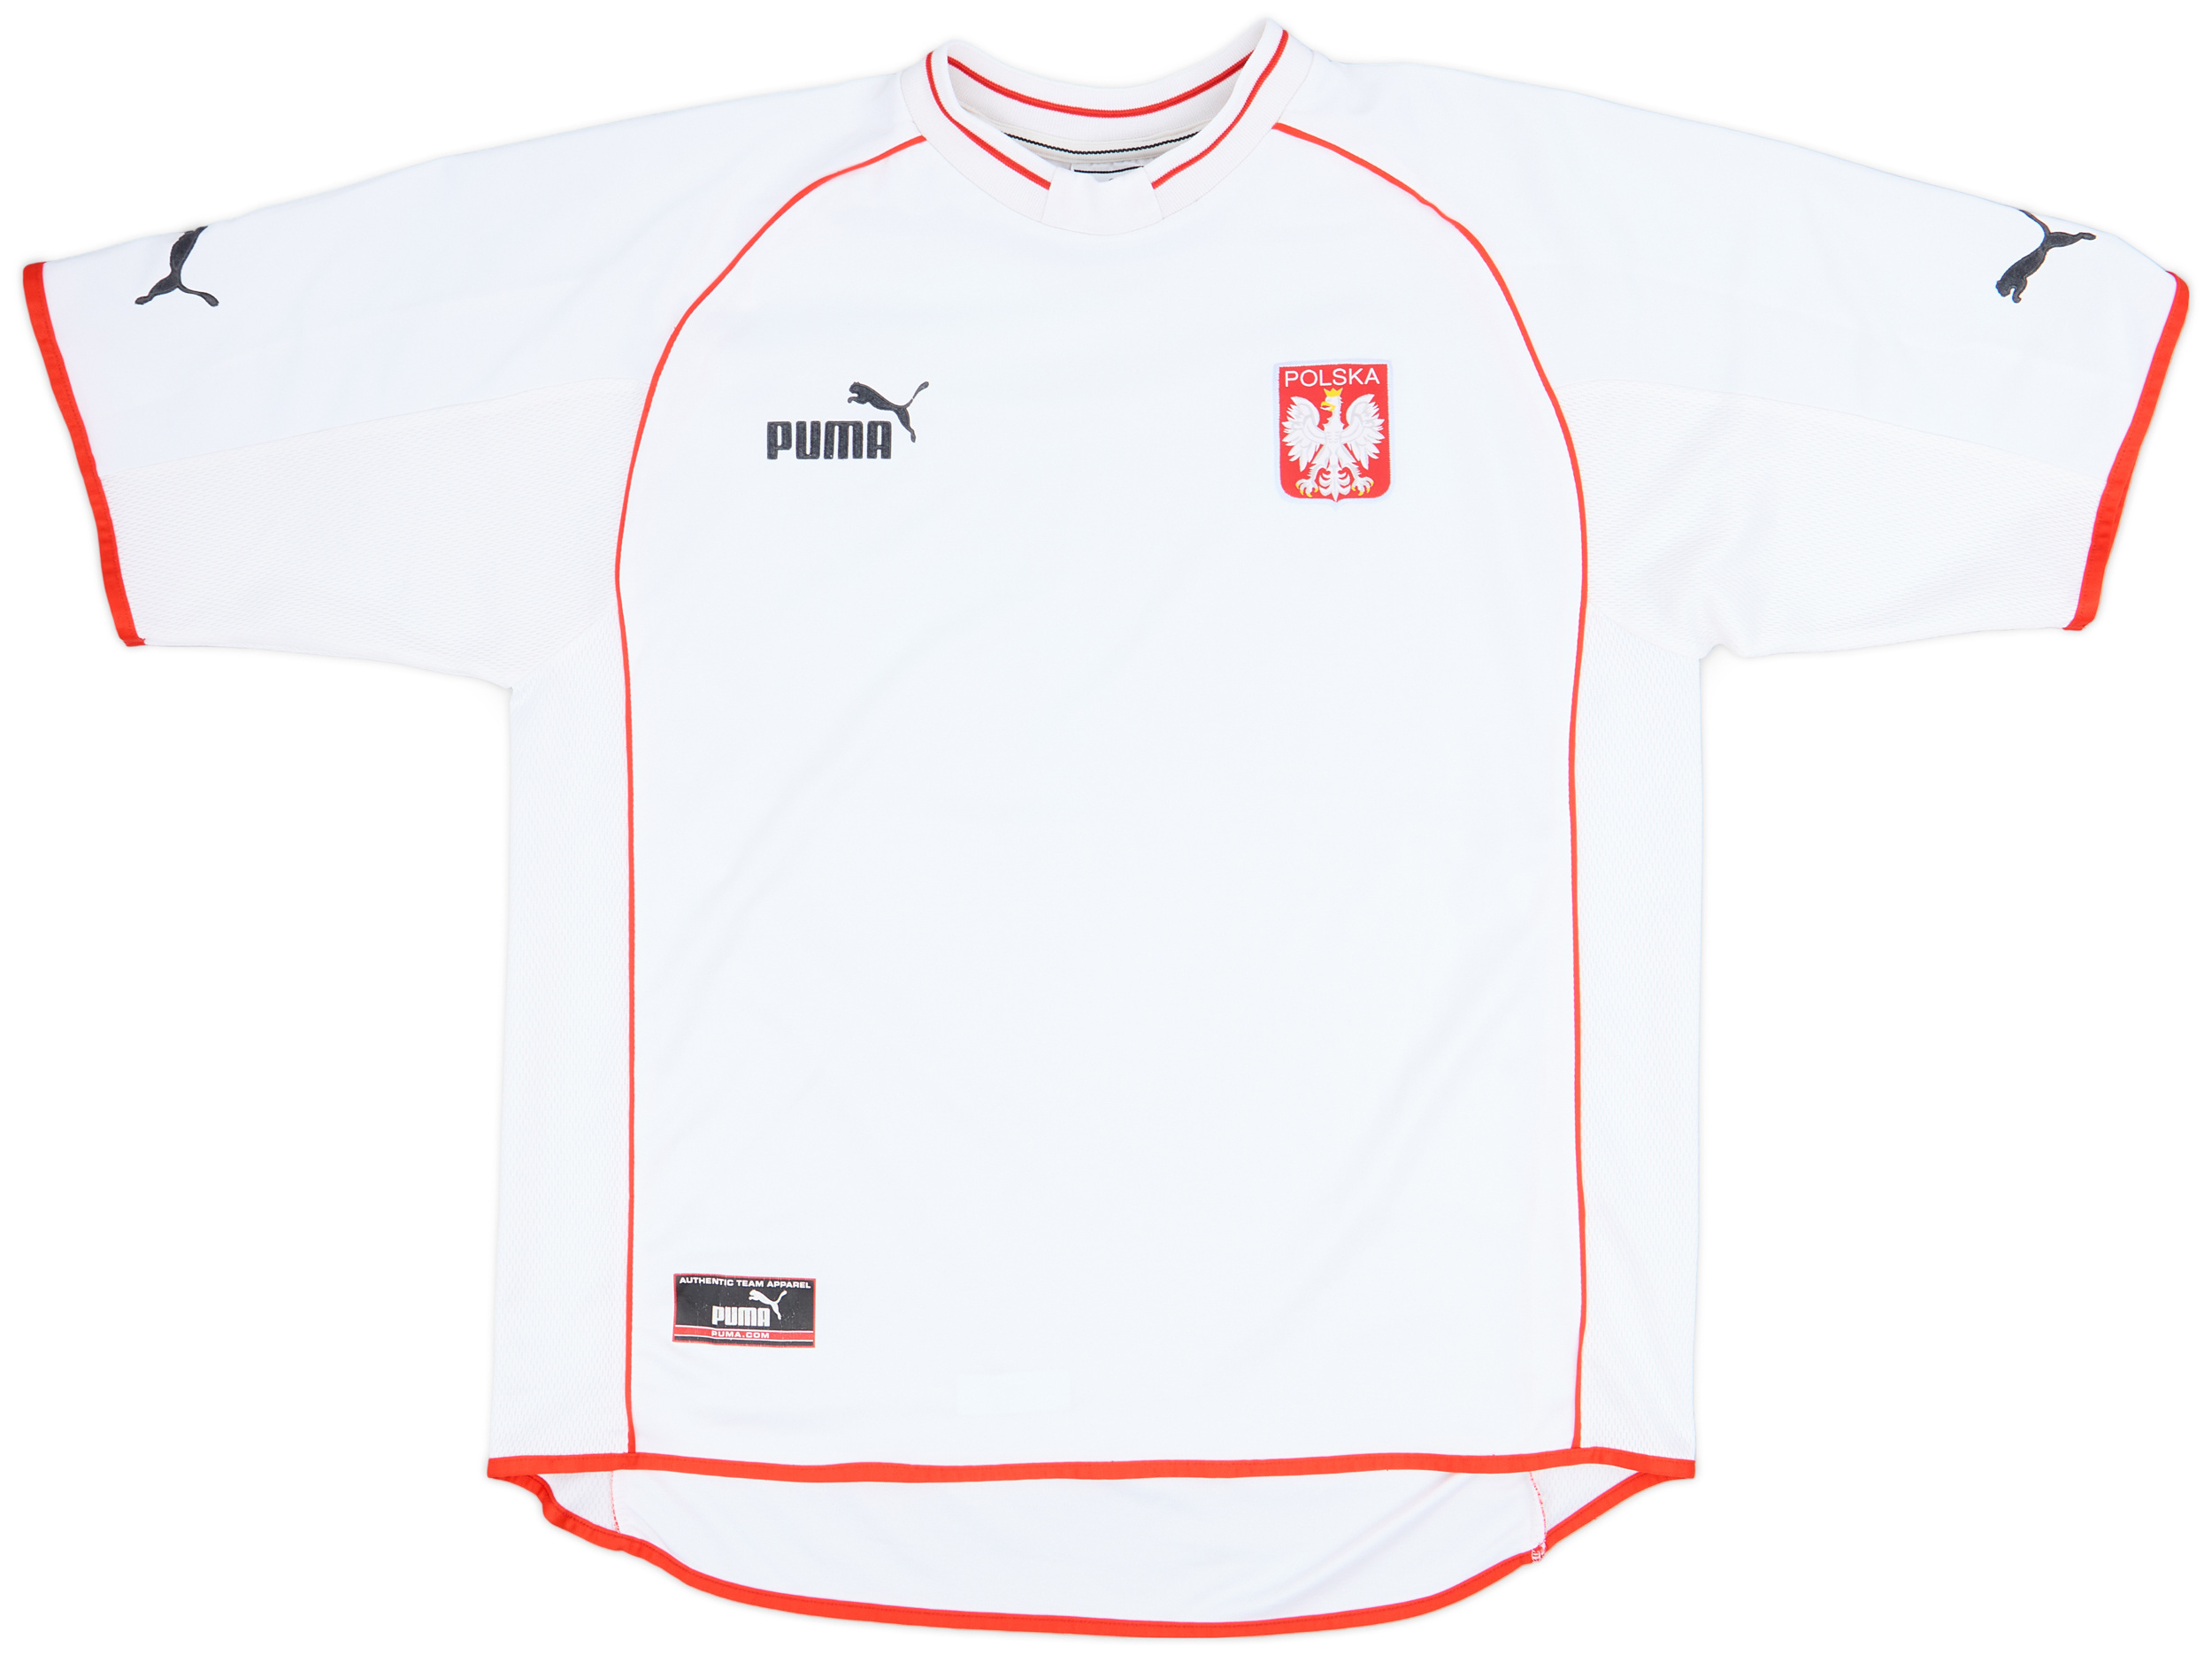 2001-02 Poland Home Shirt - 9/10 - ()